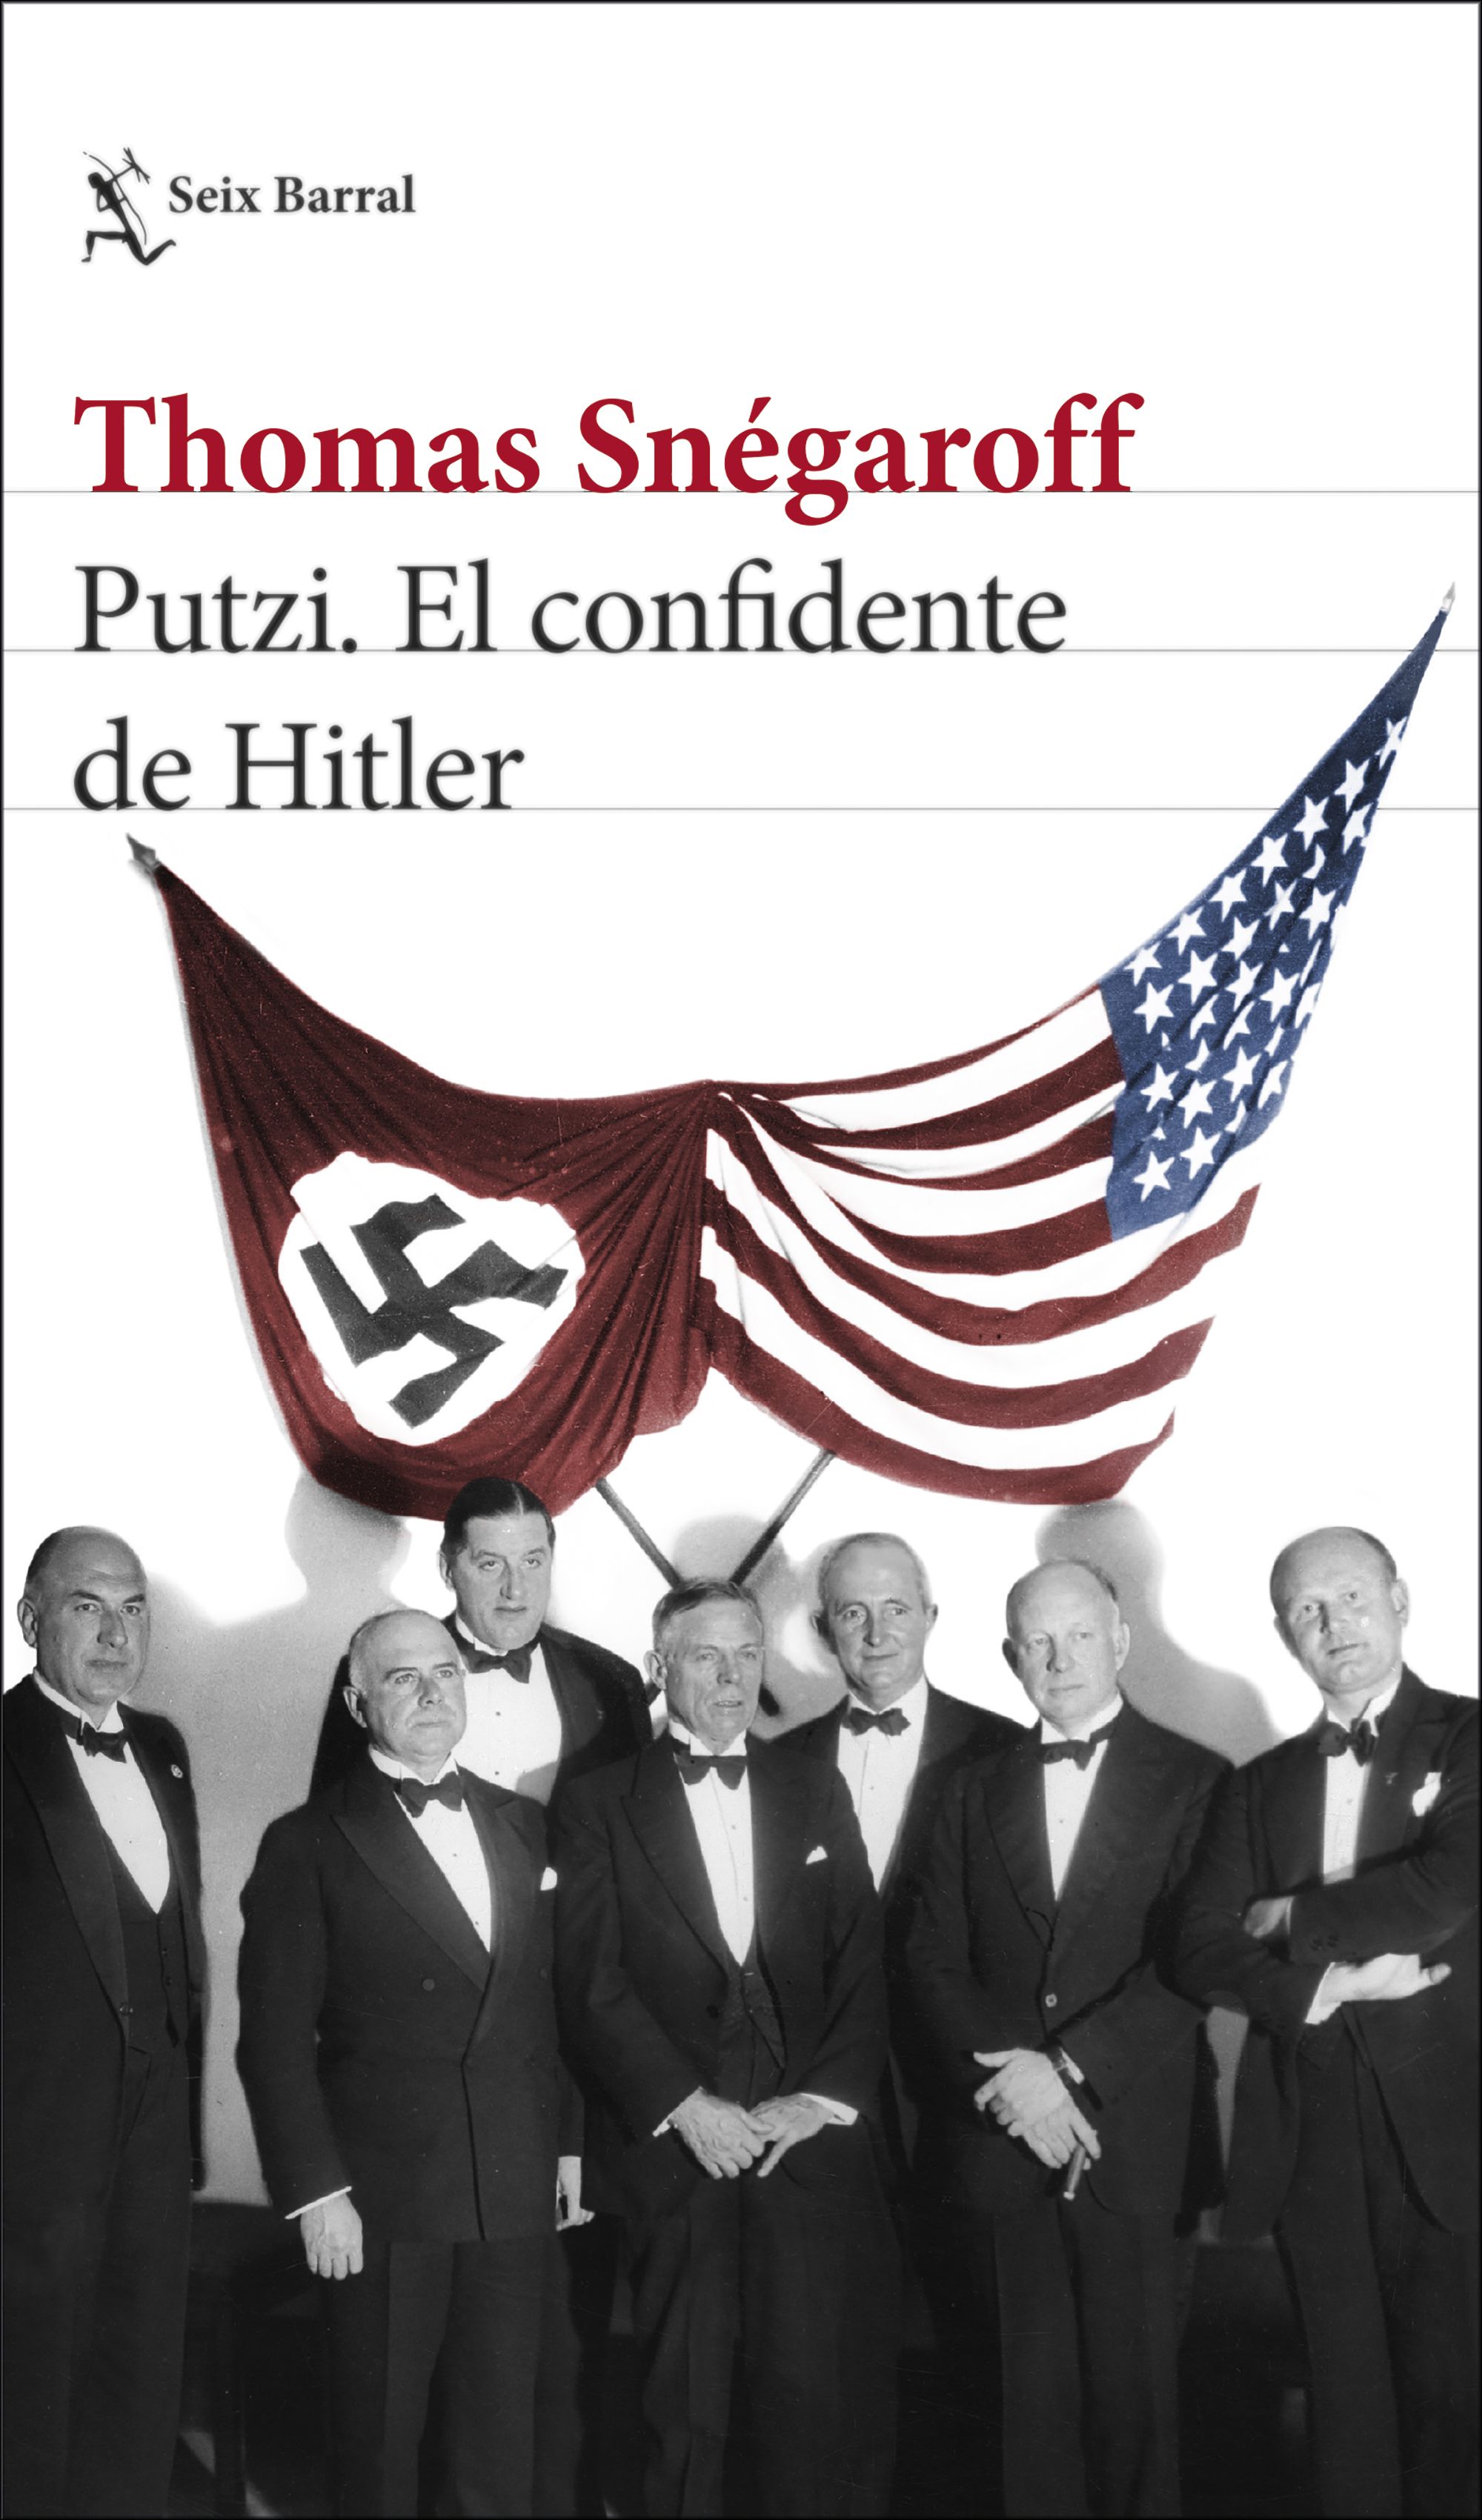 Putzi, el hombre que susurró al oído de Hitler